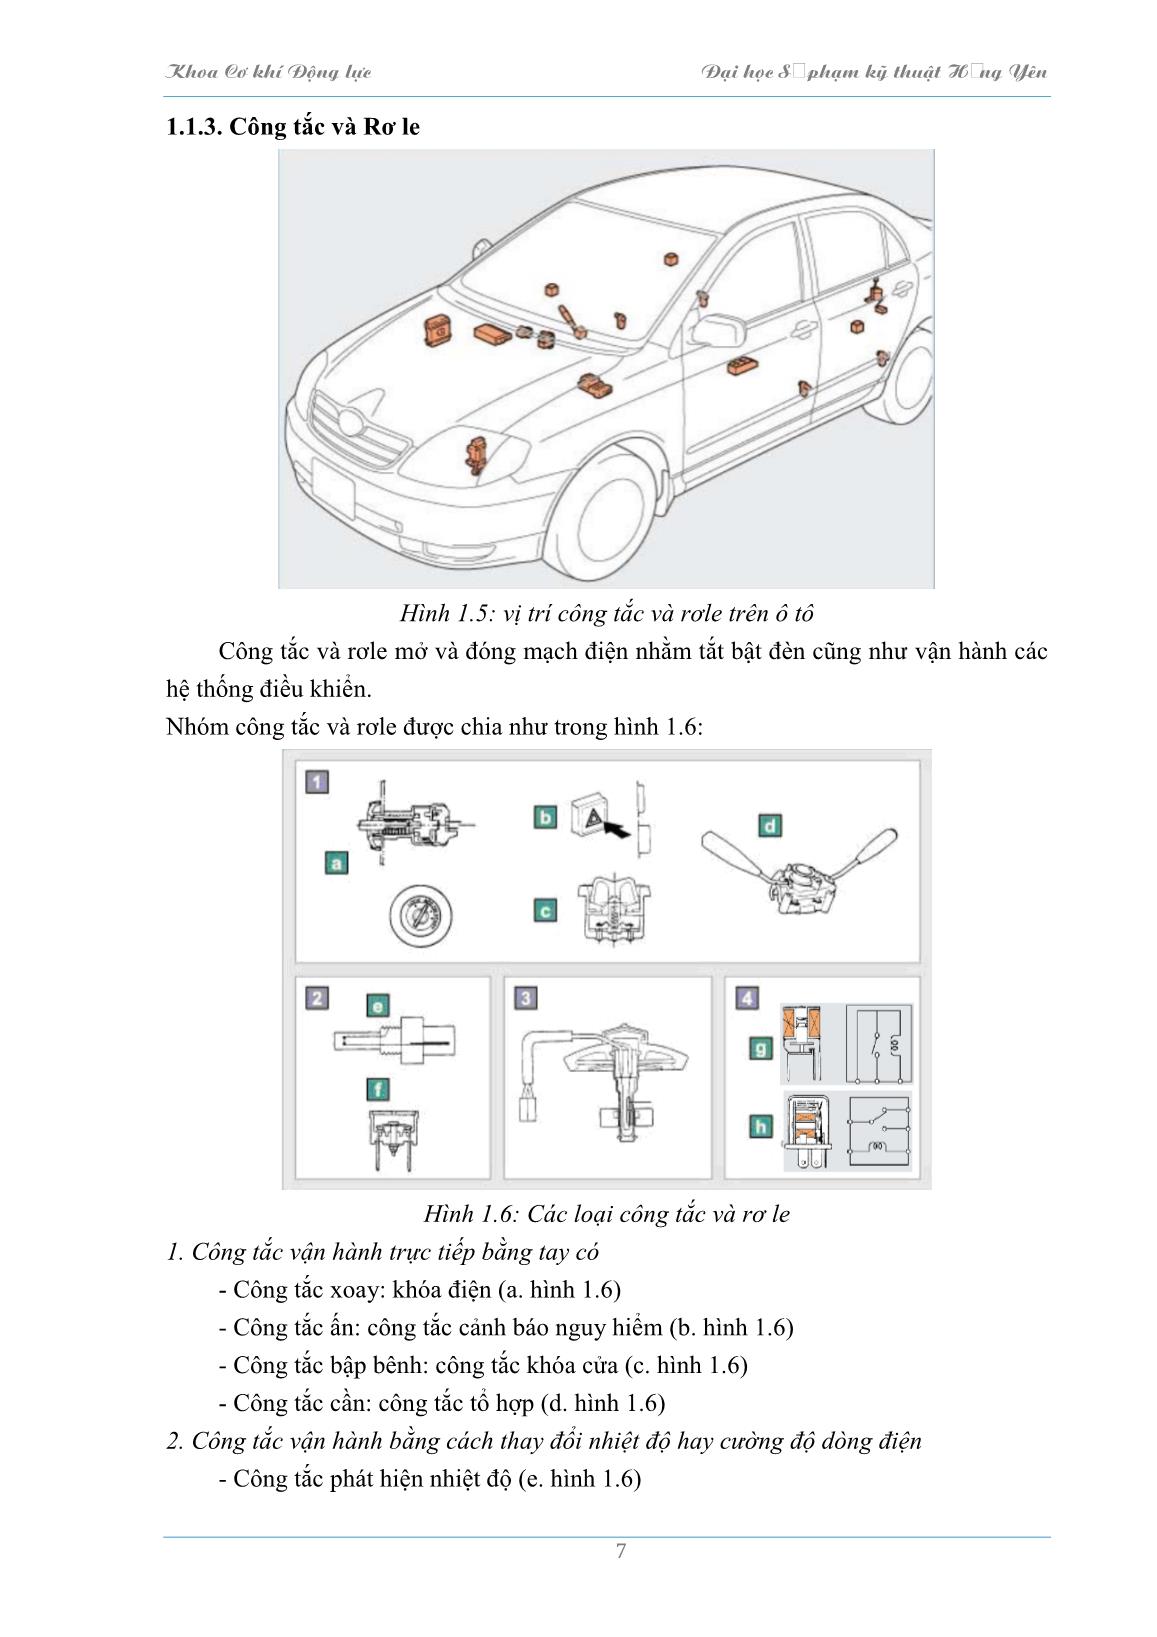 Bài giảng Hệ thống điện thân xe và điều khiển tự động trên ôtô - Trường Đại học Sư phạm Kỹ thuật Hưng Yên trang 8